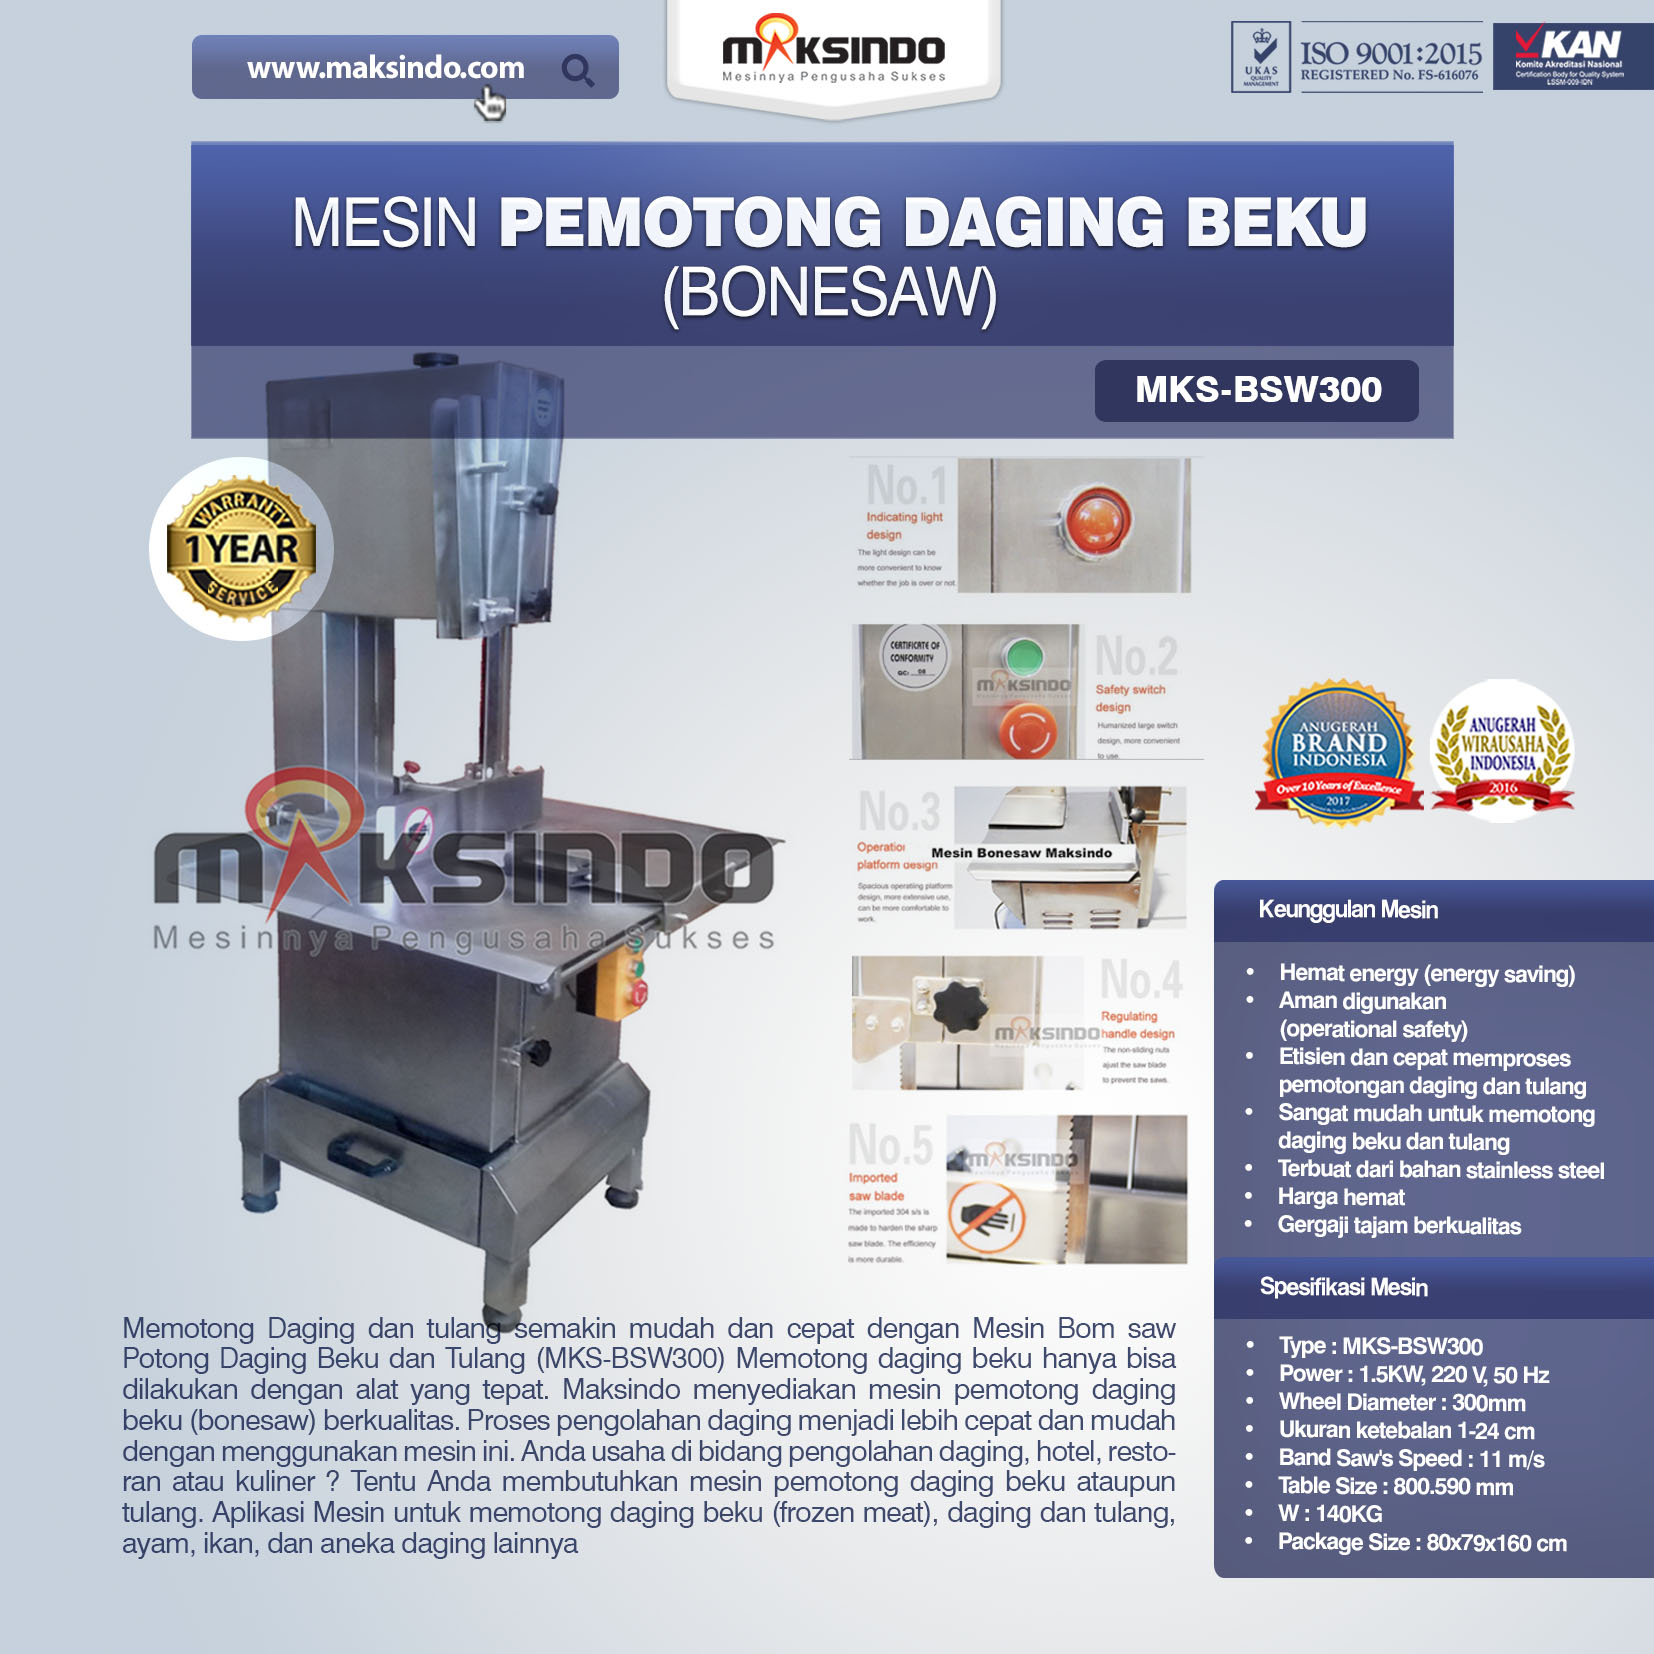 Jual Mesin Mesin Bonesaw Potong Daging Beku dan Tulang (MKS-BSW300) di Bandung